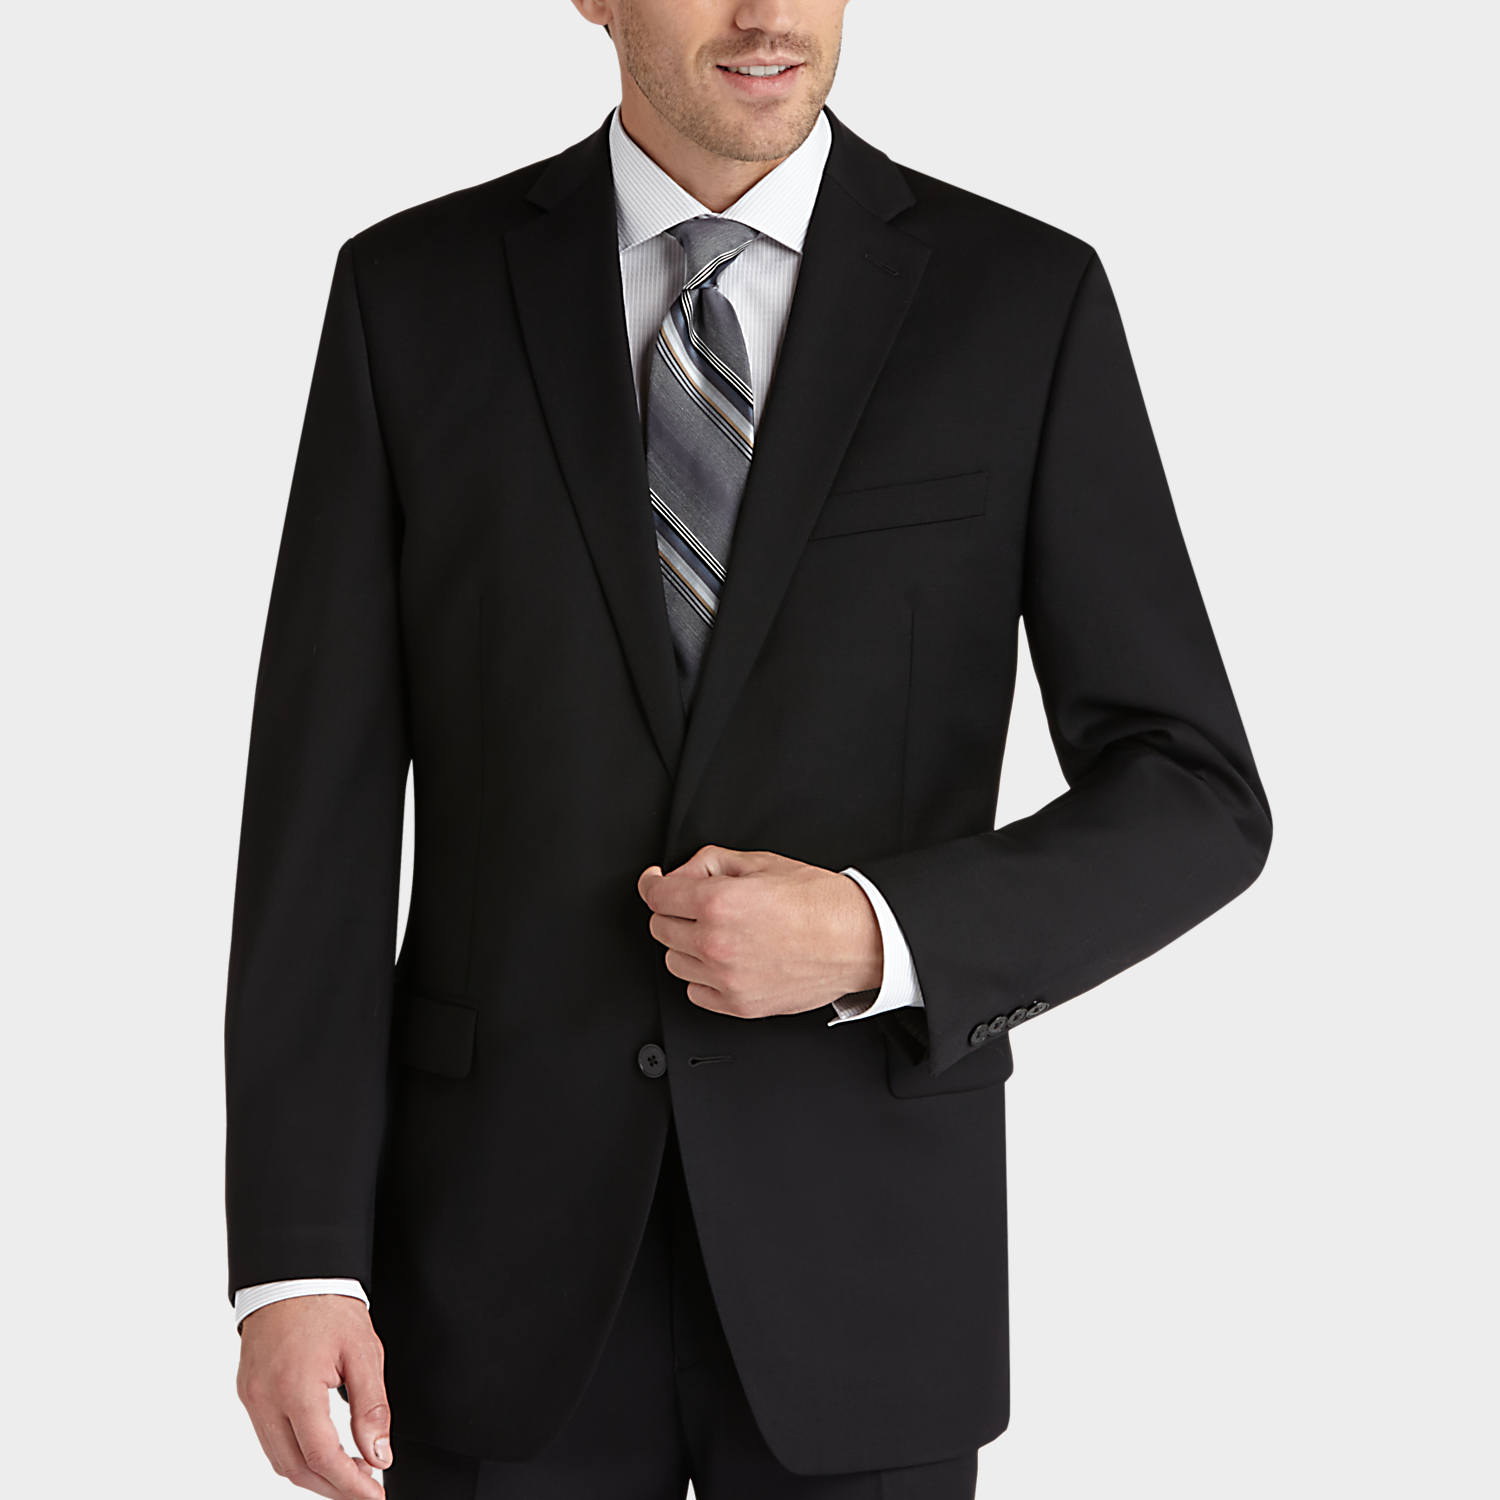 black suits calvin klein black slim fit suit - menu0027s slim fit | menu0027s wearhouse MAXEBBJ